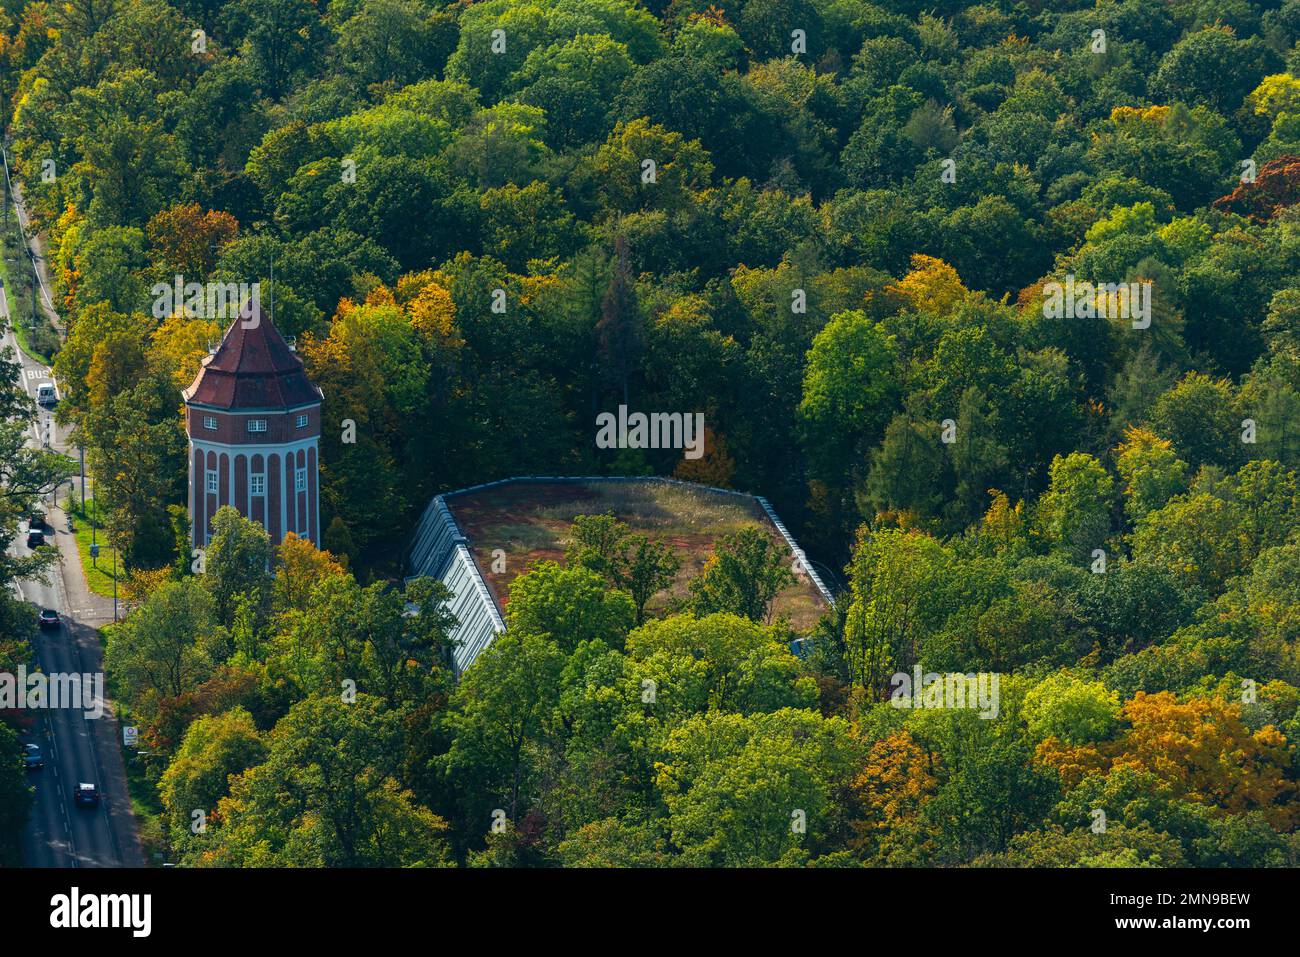 Vue aérienne de la tour de télévision sur Hohen Bopser, Degerloch la ville, Stuttgart, Bade-Wurtemberg, Allemagne du Sud, Europe centrale Banque D'Images